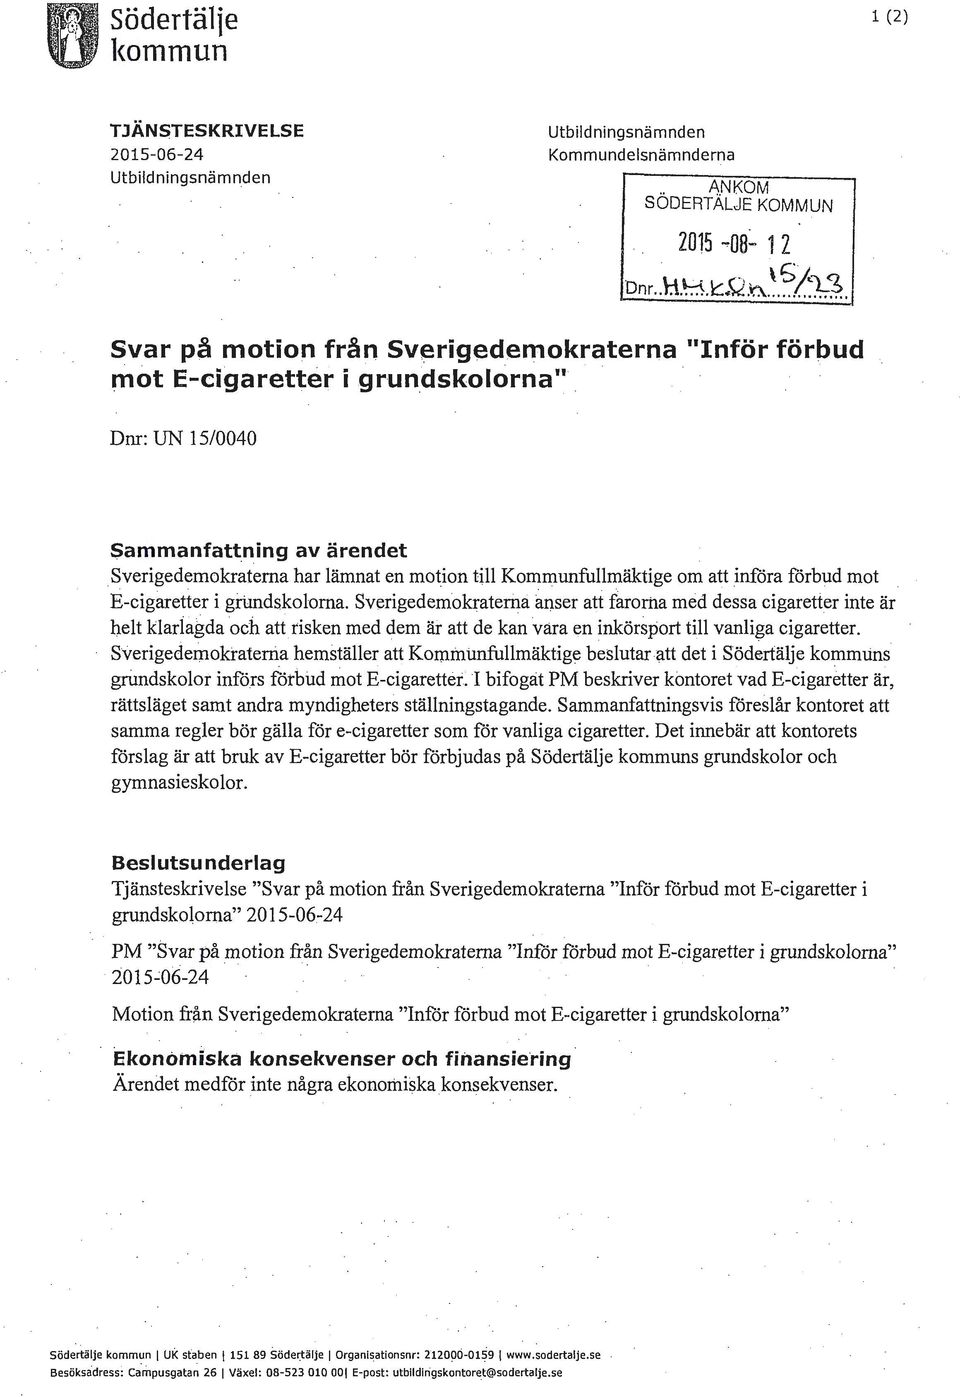 Sverigedemokraterna har lämnat en motion till Kommunfullmäktige om att införa förbud mot. E-cigaretter i gitmdskolorna.